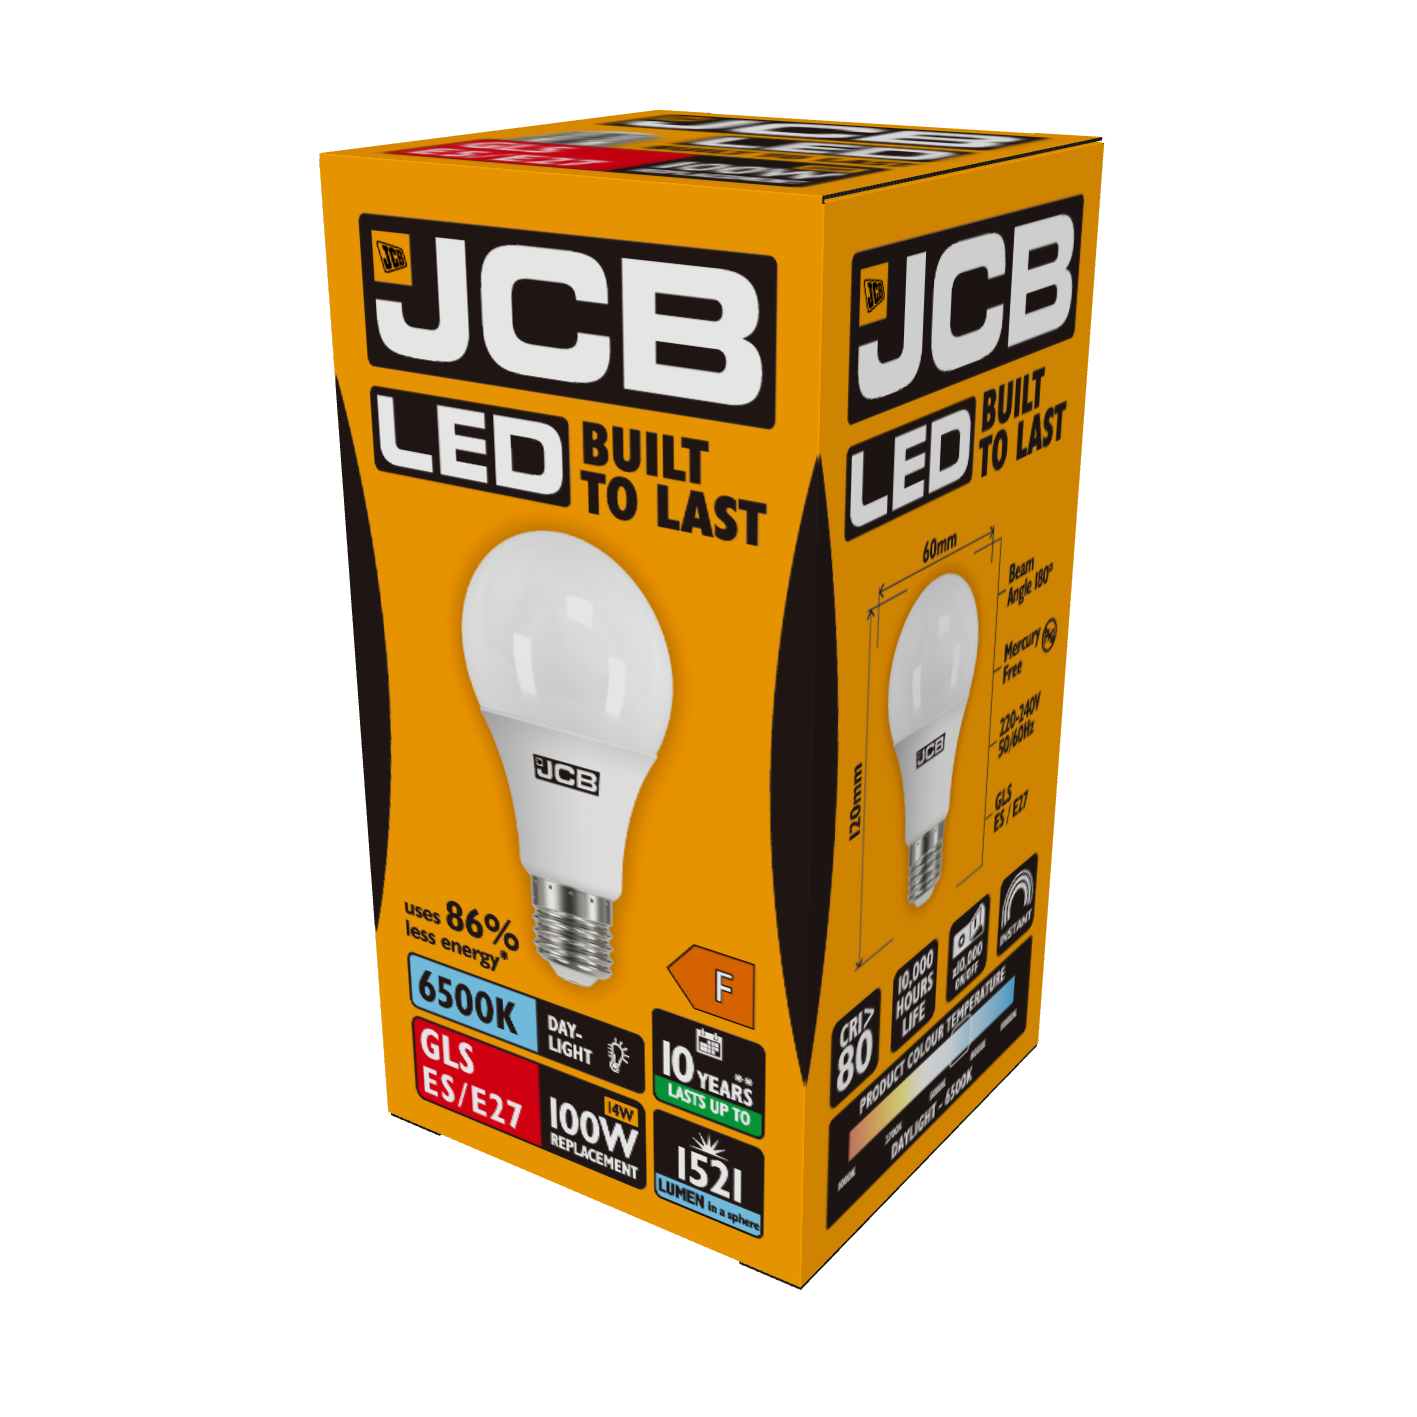 JCB LED GLS E27 (ES) 1.521 lm 14 W 6.500 K (Tageslicht), Packung mit 1 Stück